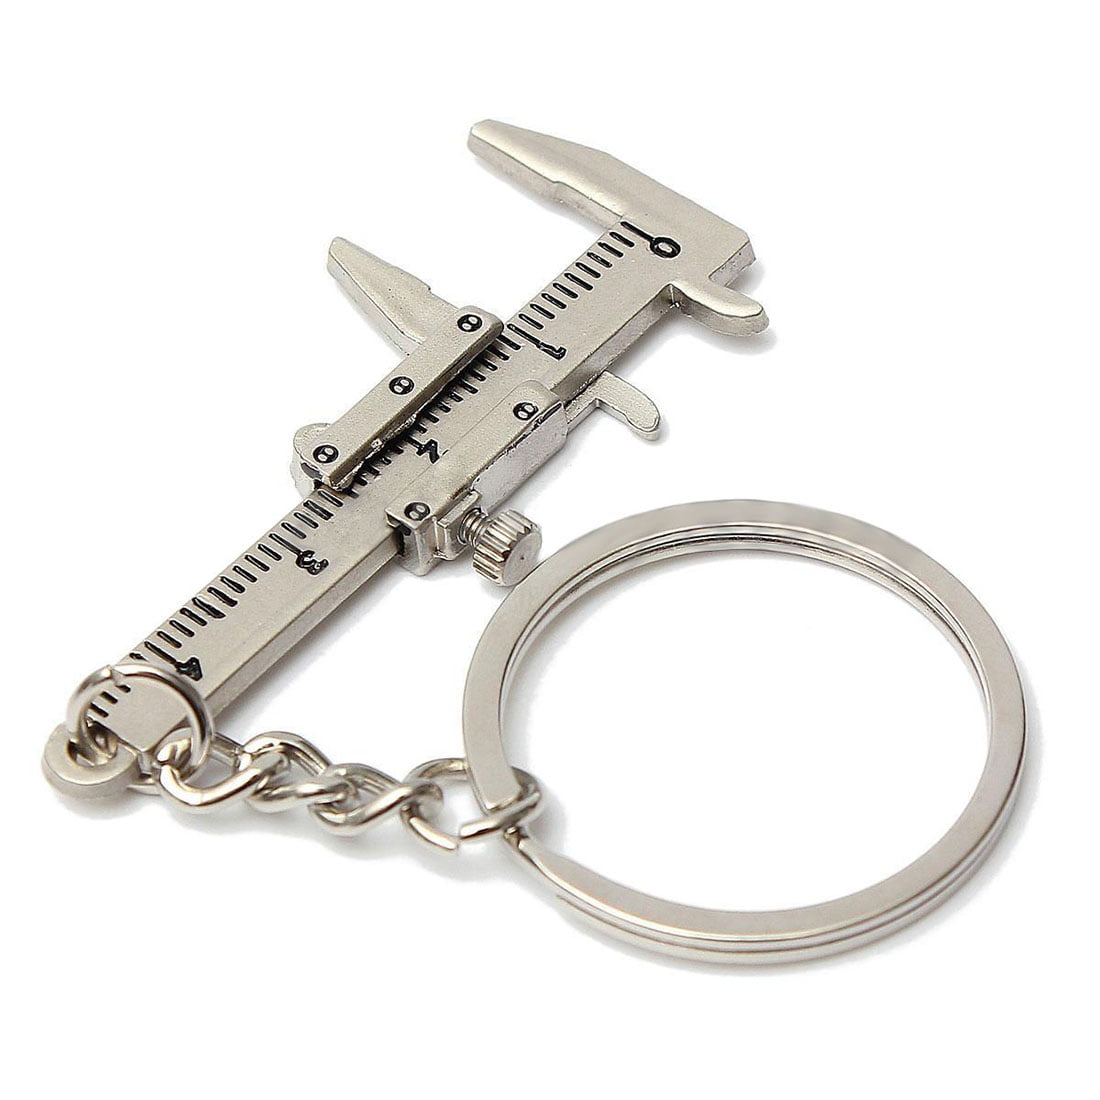 Useful Mini Vernier Caliper Tools Pendant Slider Keyring Key Chains Holder 10CM 